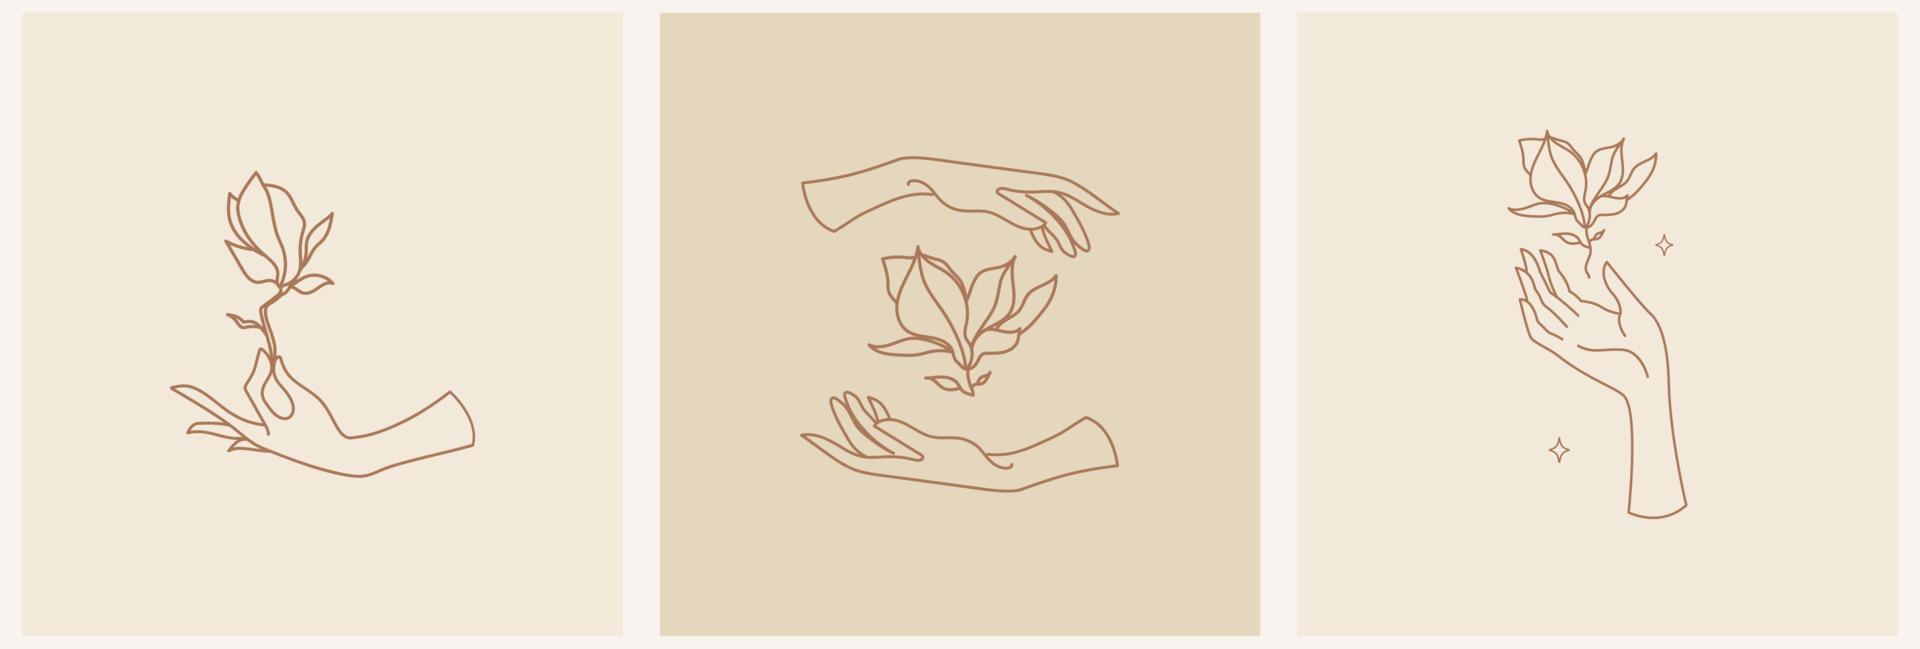 simboli femminili per cosmetici alla moda per la cura della pelle. mano femminile con fiore di magnolia, illustrazione vettoriale del logo modello in stile line art.